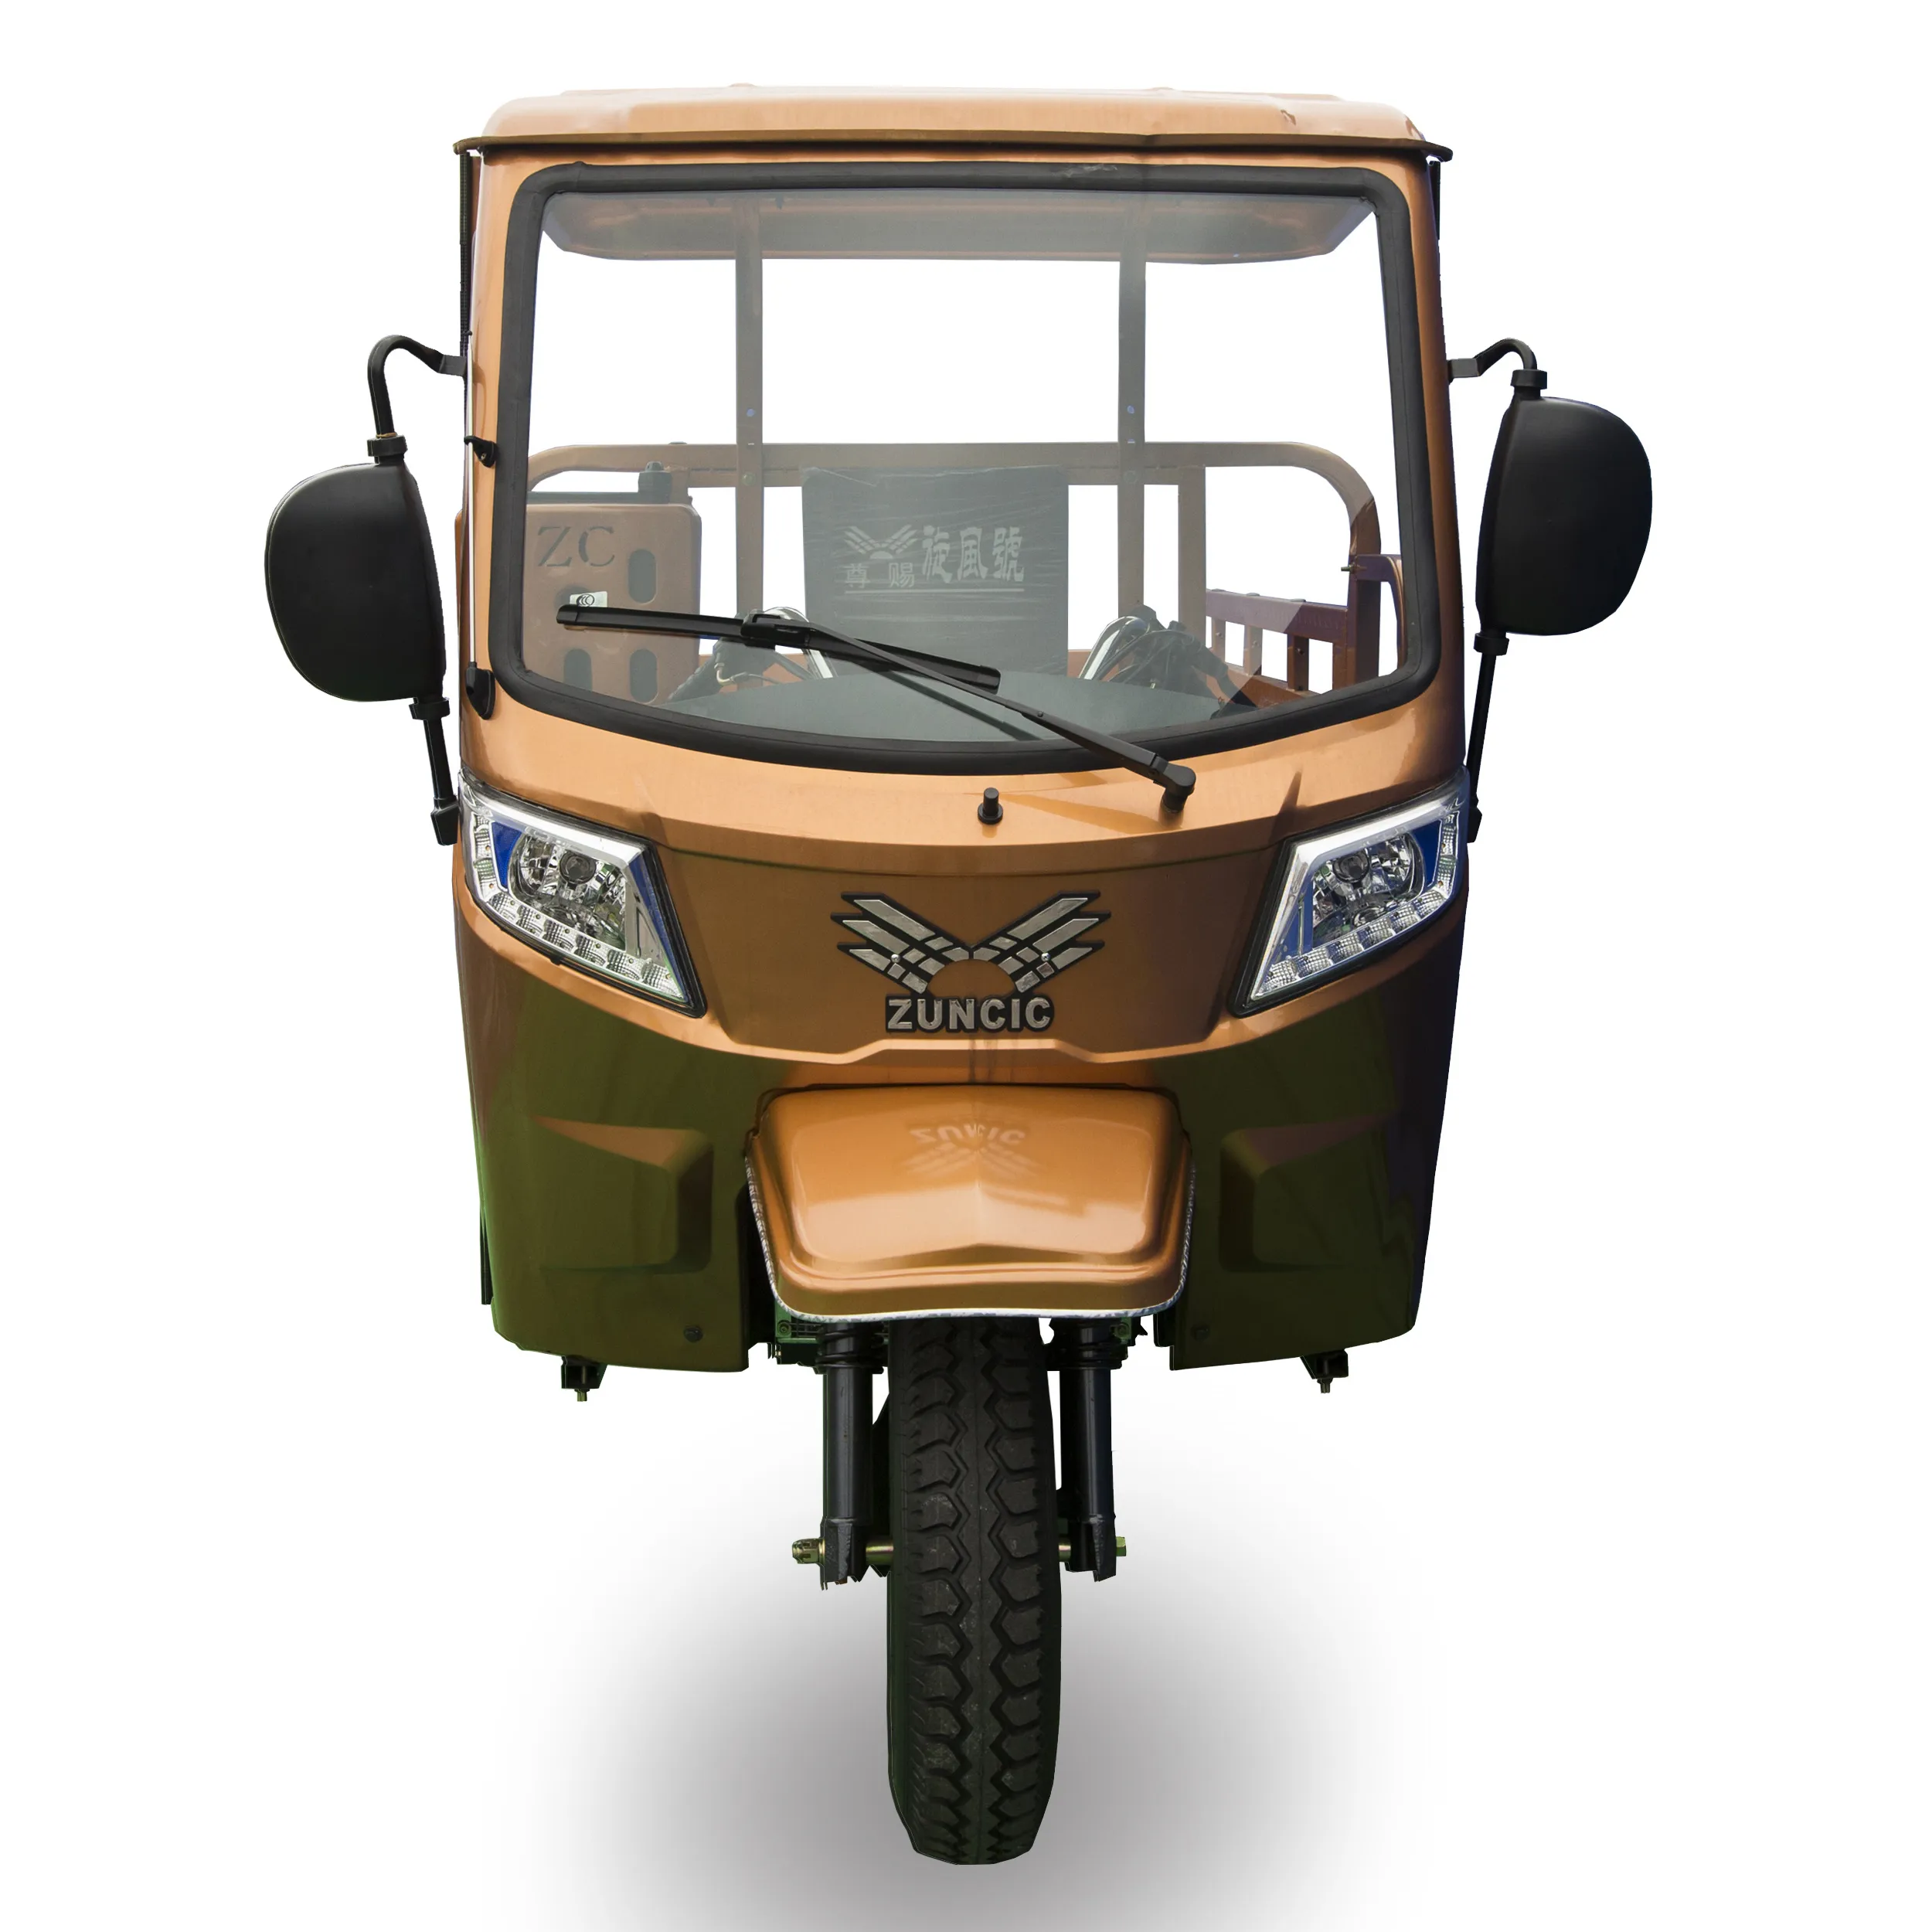 إنتاج المهنية 200cc تبريد الهواء محرك موتو الغاز دراجة ثلاثية العجلات دراجة ثلاثية العجلات البضائع